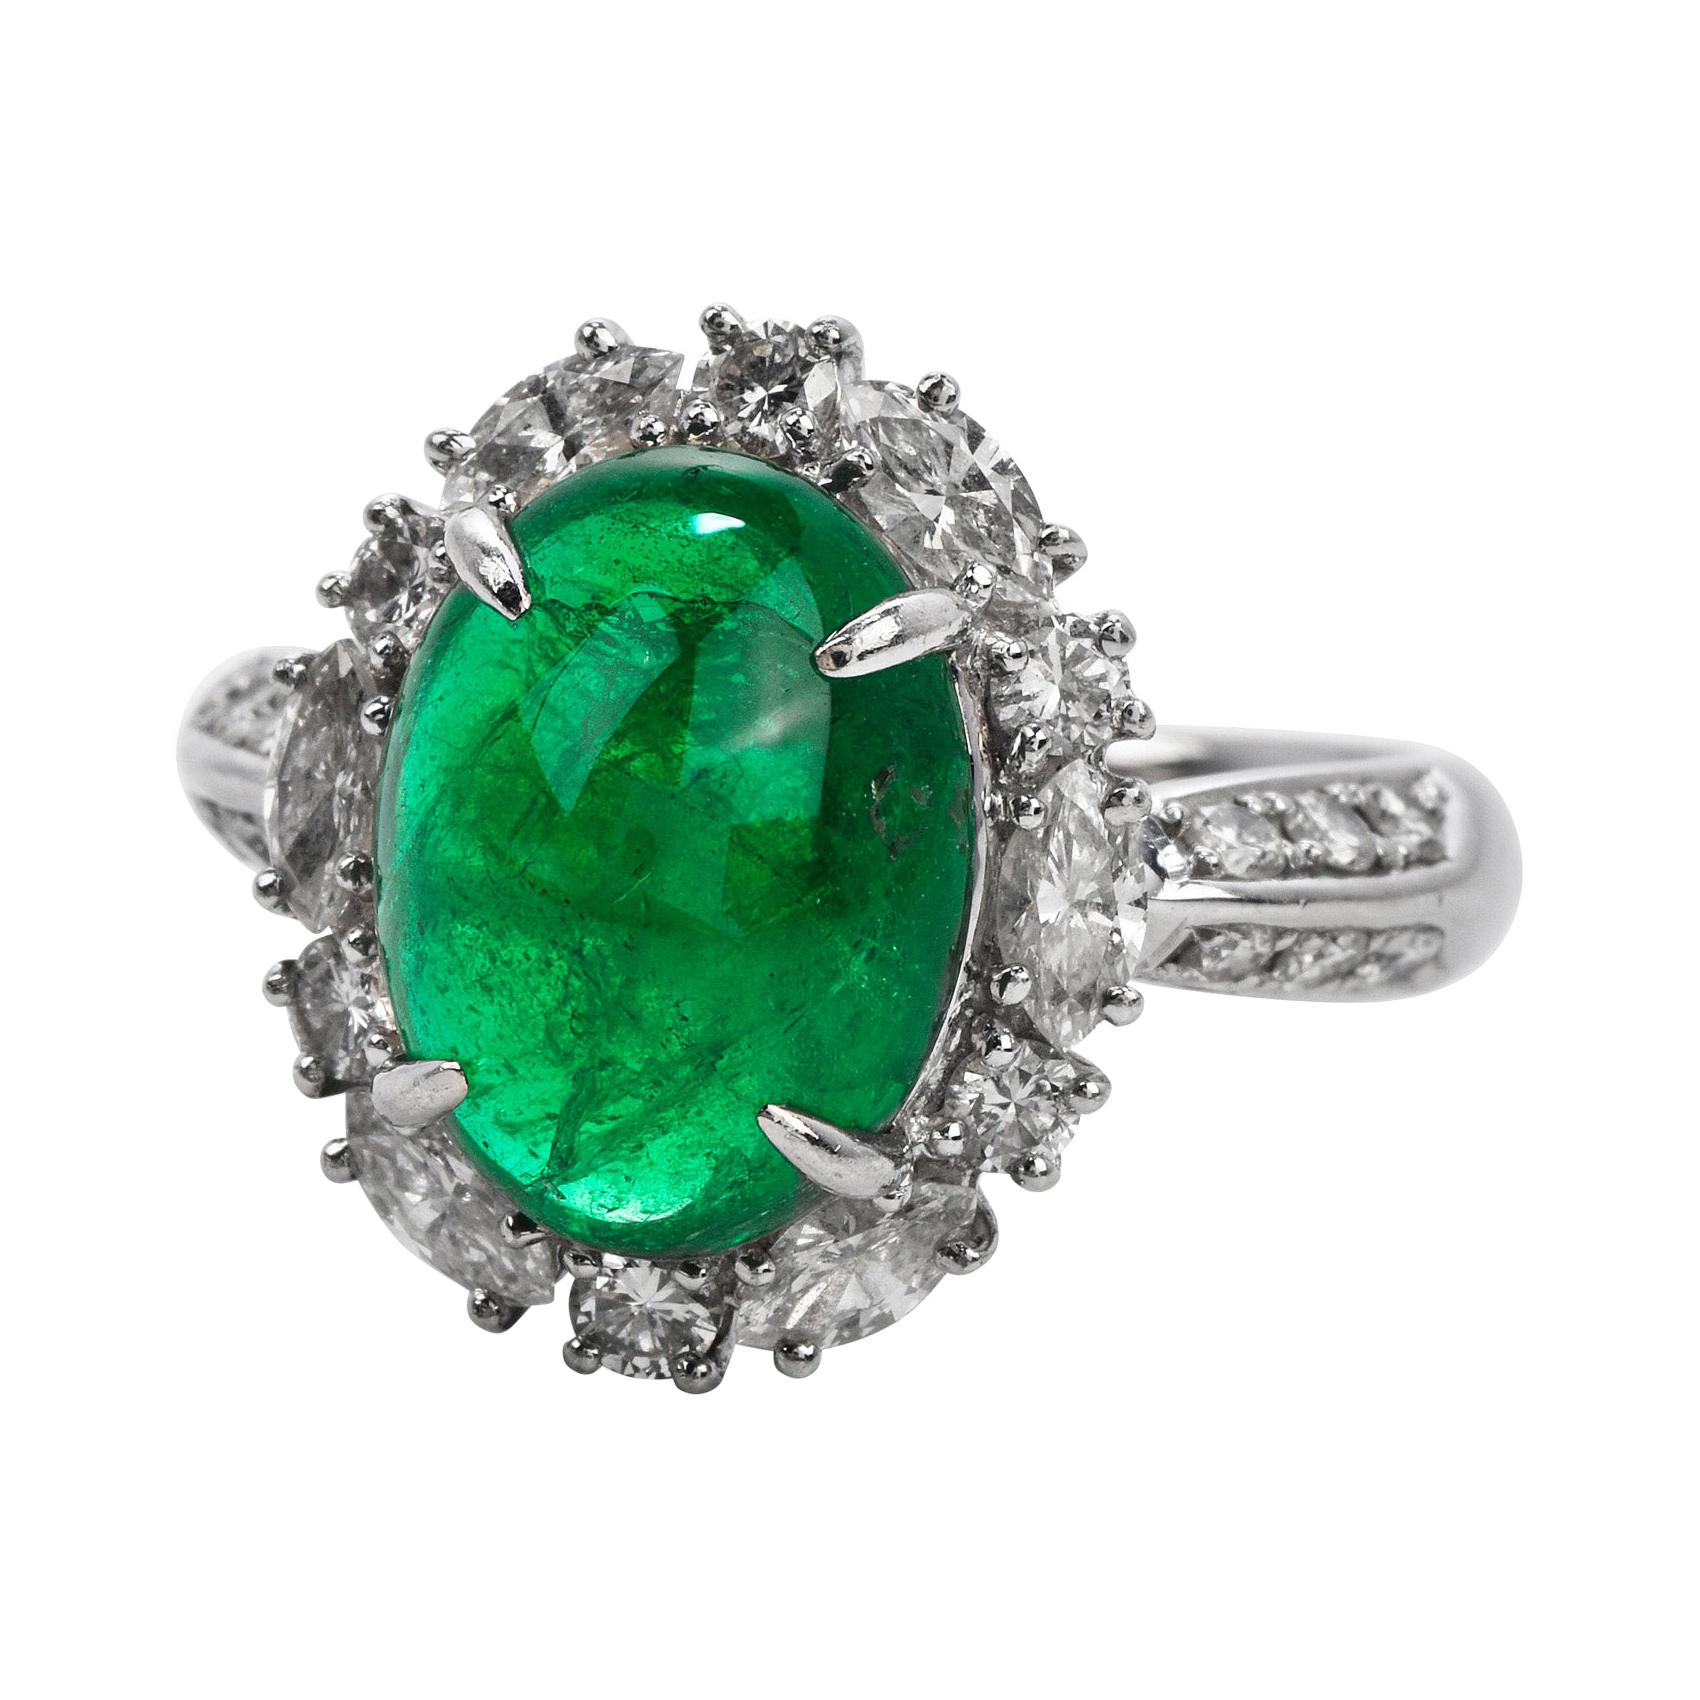 Dieser exquisite GIA Genuine Emerald & Diamond Cocktail Ring ist fachmännisch aus massivem Platin mit einem Gesamtgewicht von 9,54 Gramm gefertigt.

Der Smaragd mit einem Gewicht von ca. 5,17 Karat ist umgeben von (6) echten Naturdiamanten im